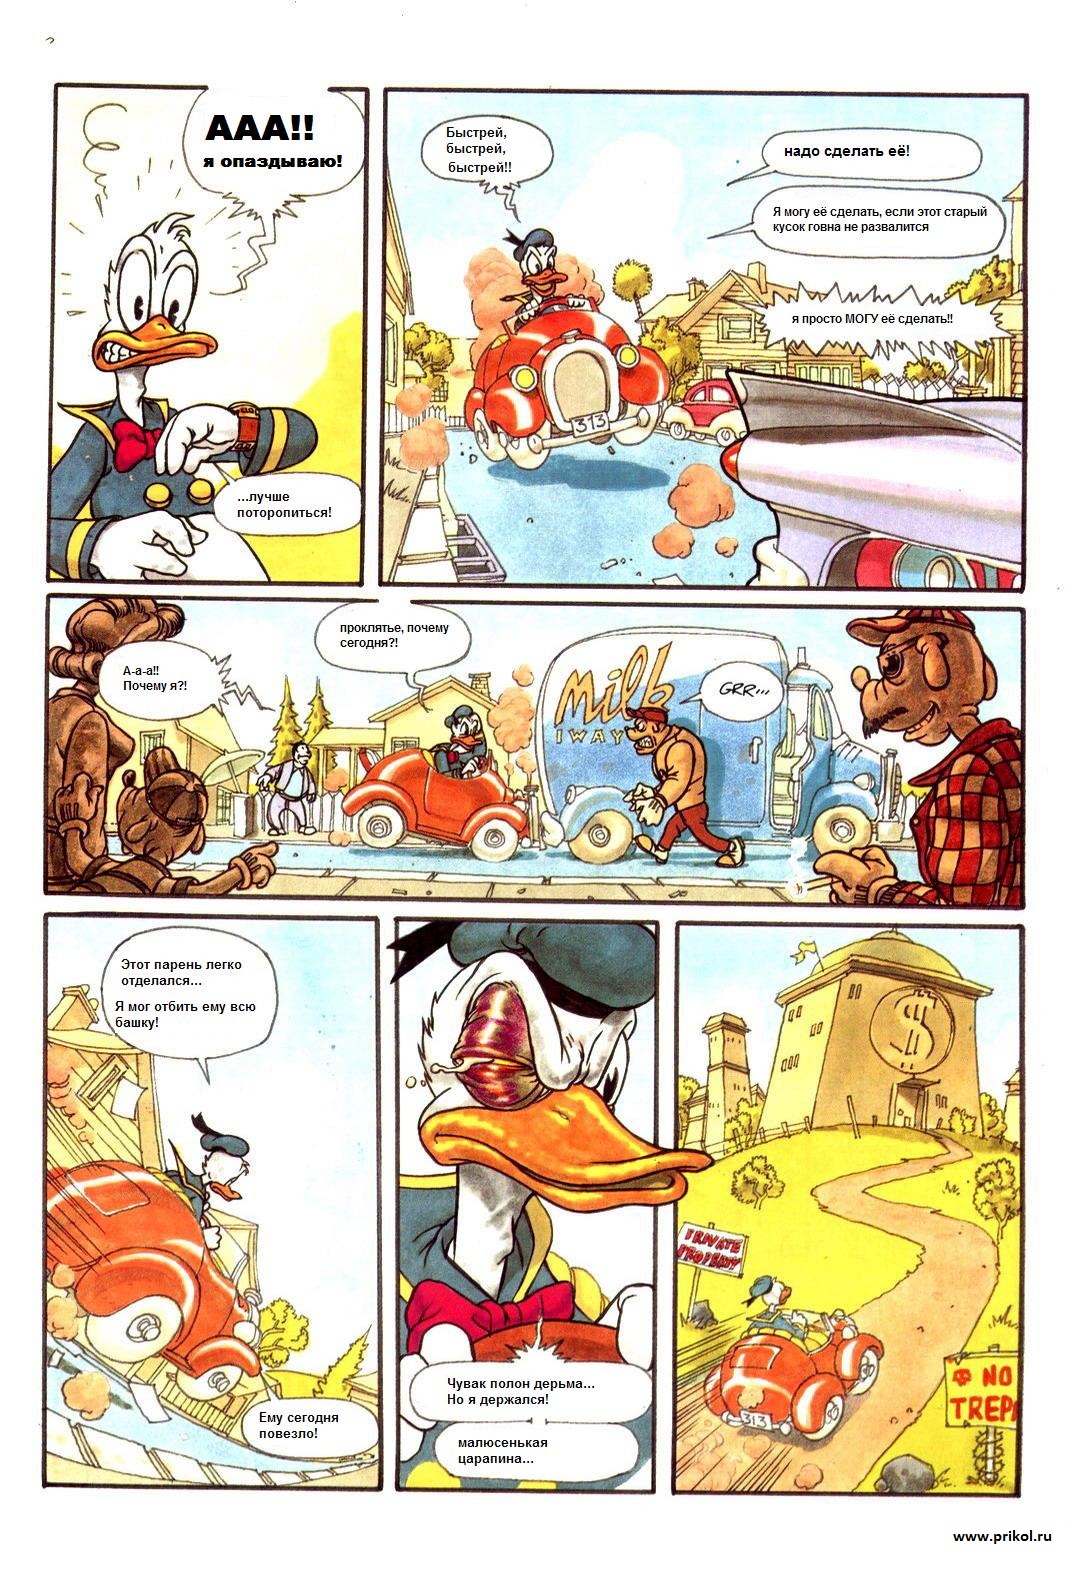 duck-tales-comics-04